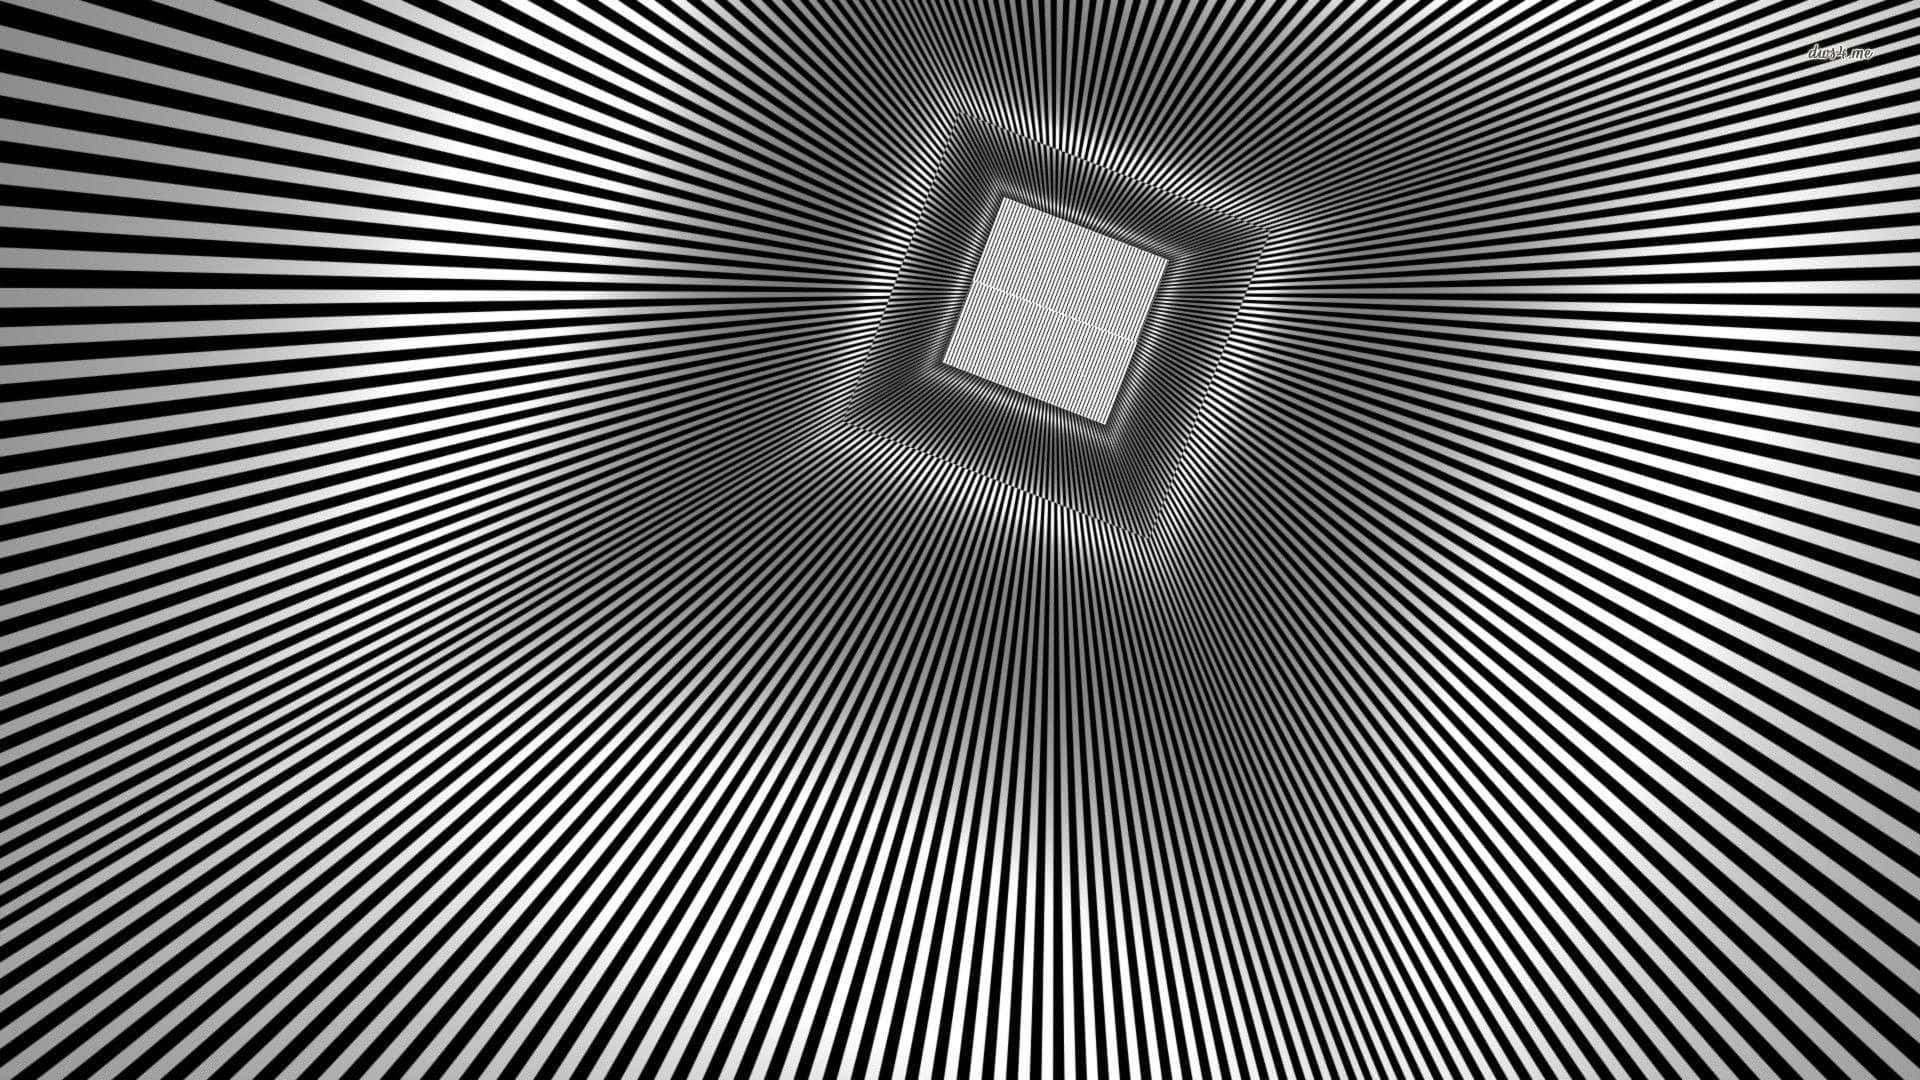 Seje Optiske Illusioner 1920 X 1080 Wallpaper